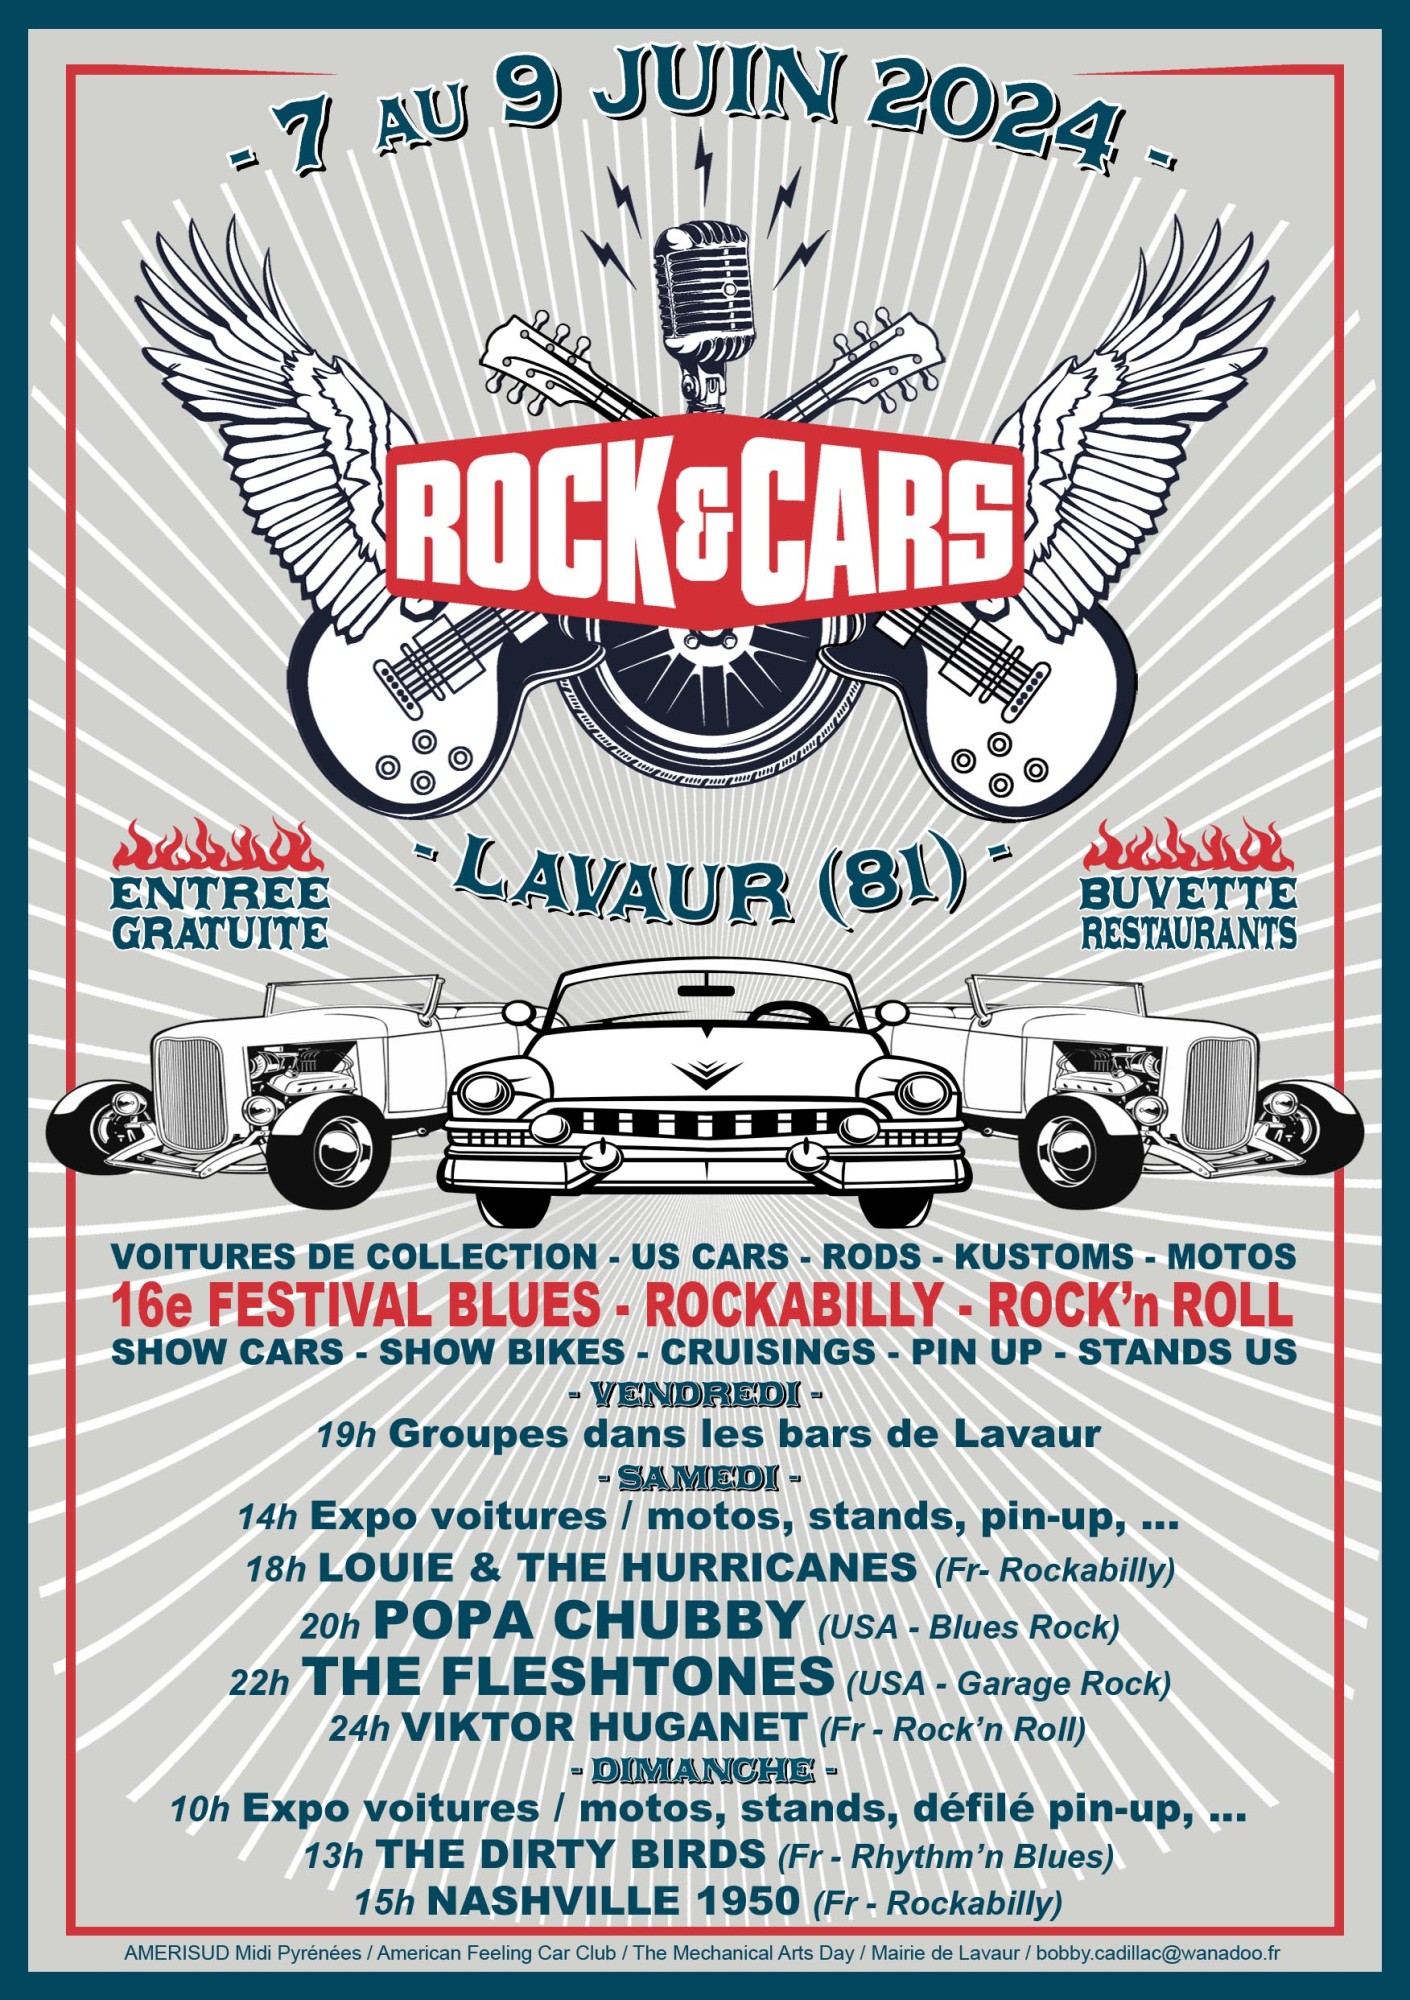 Lavaur - Festival  ROCK'&'CARS à Lavaur (81) du 7 au 9 juin 2024